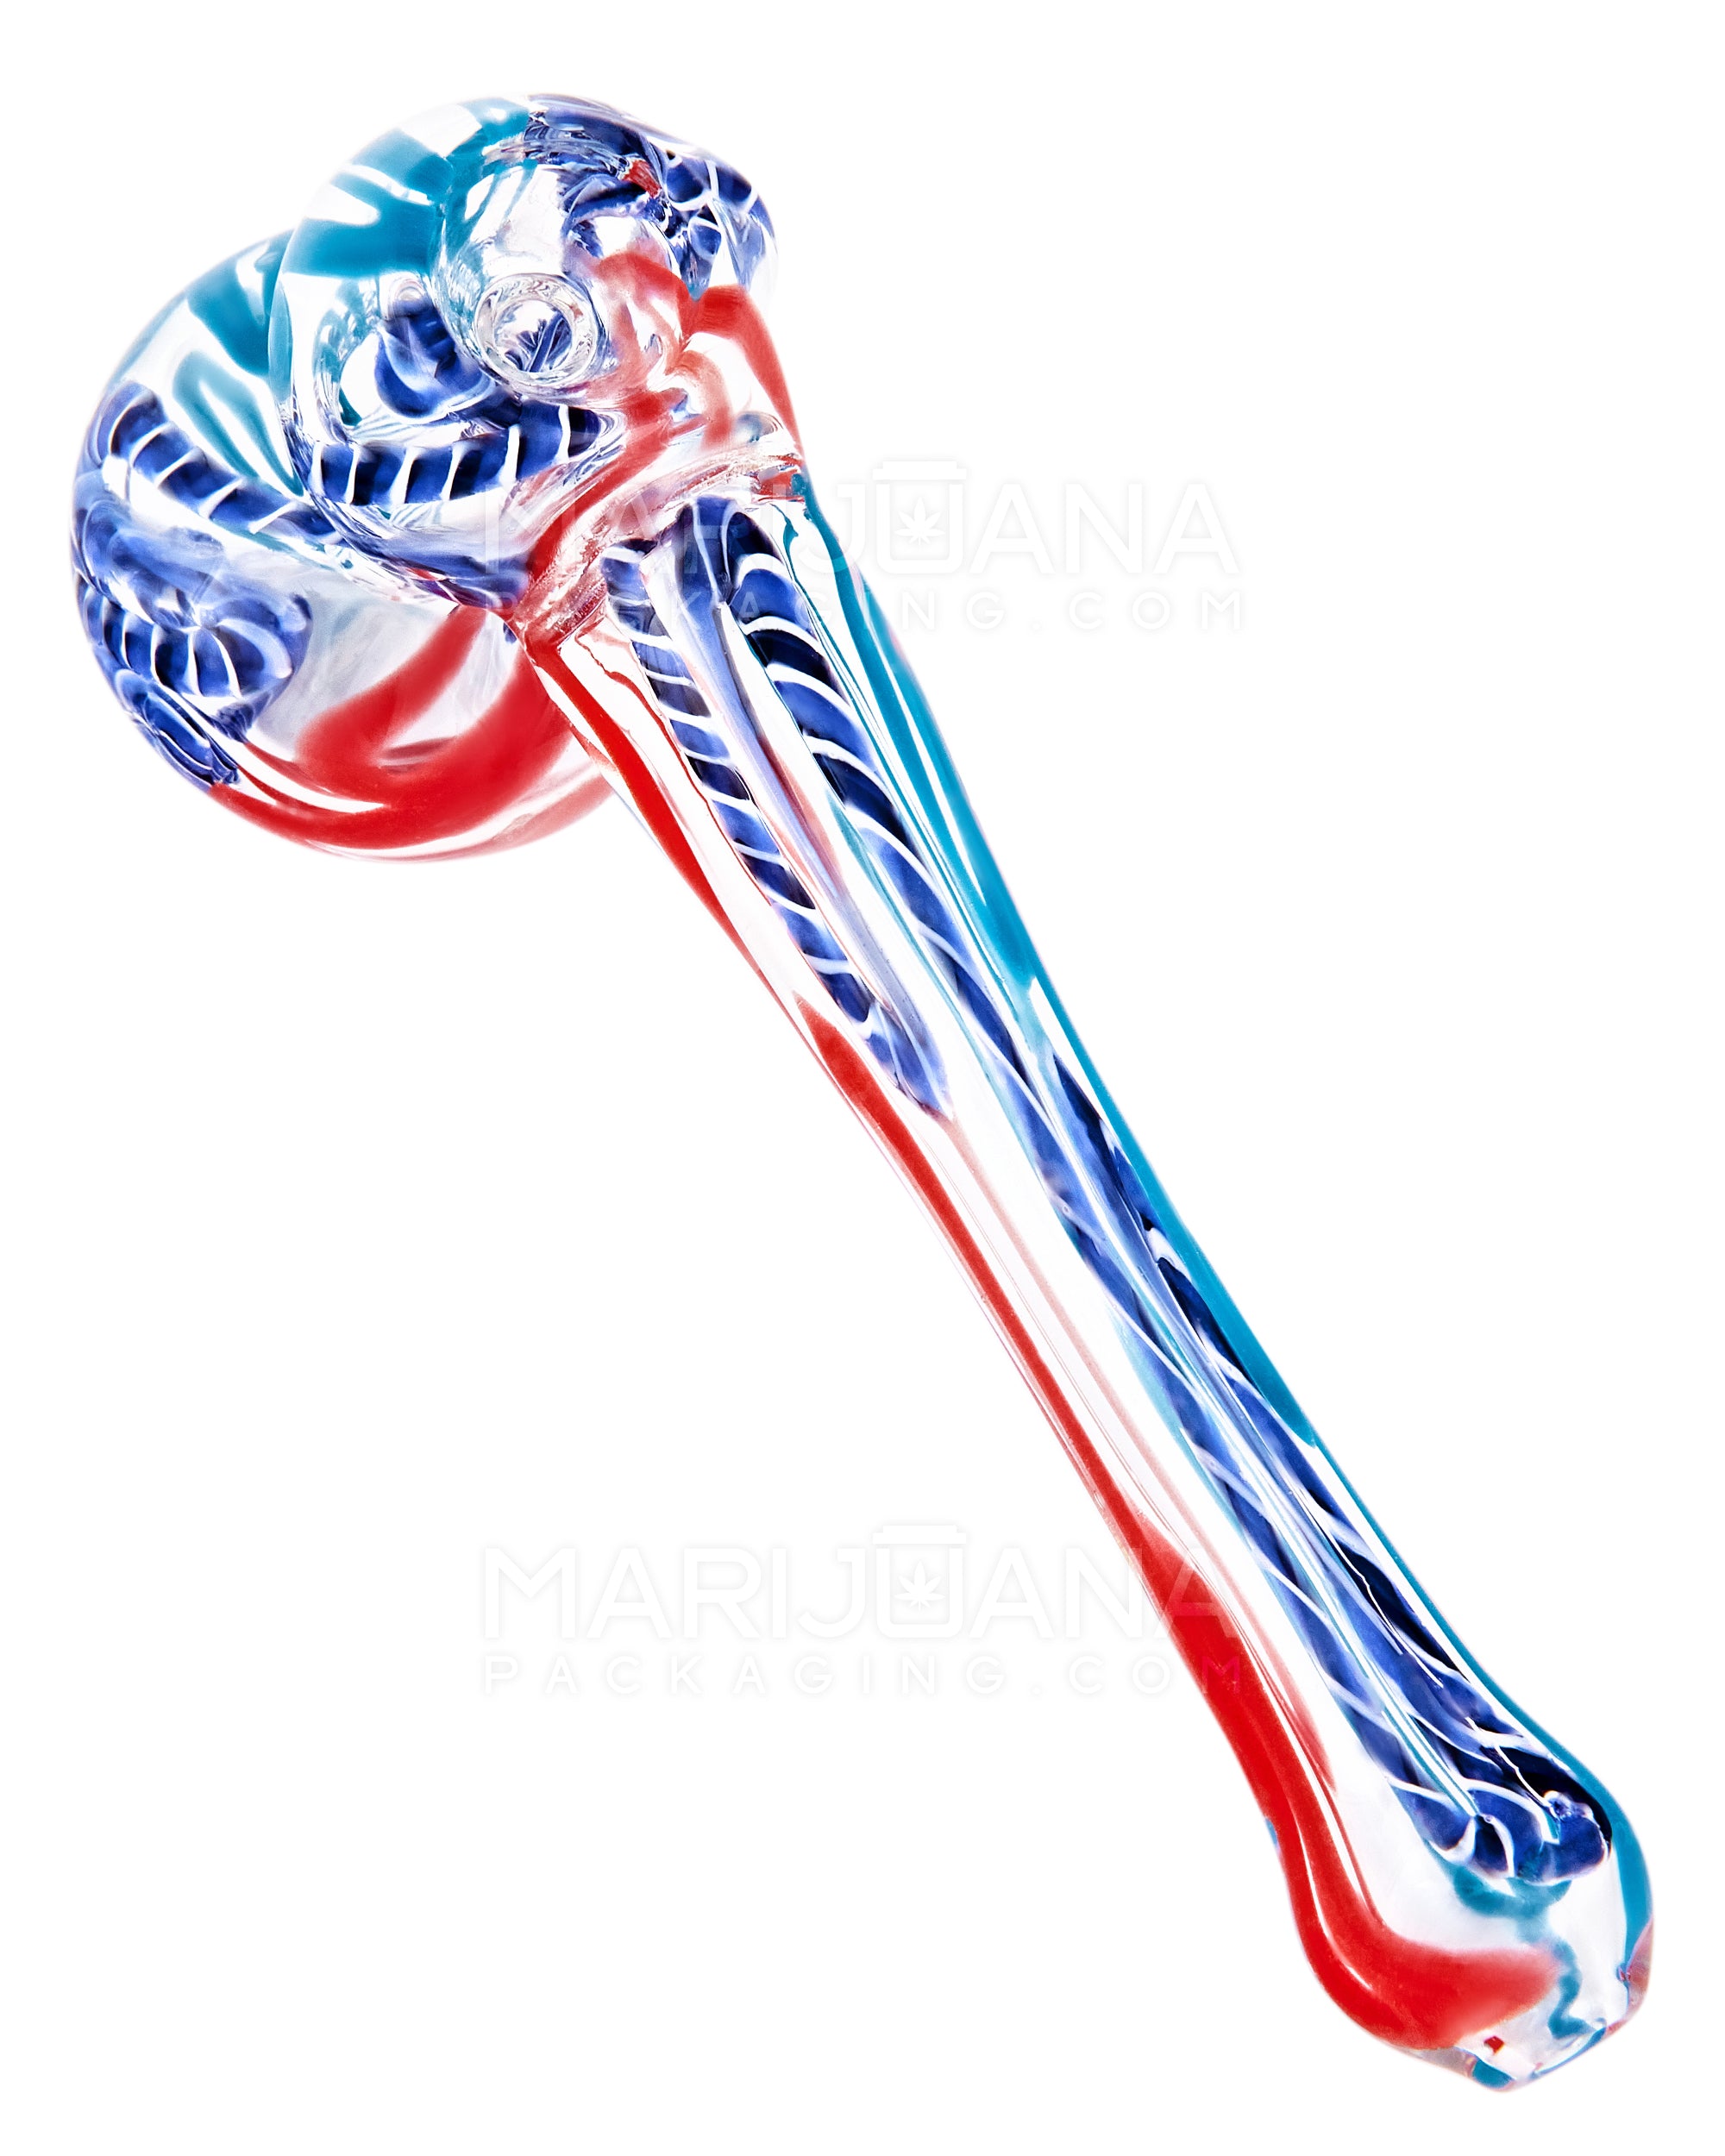 Ribboned & Swirl Hammer Bubbler | 4in Long - Glass - Assorted - 1